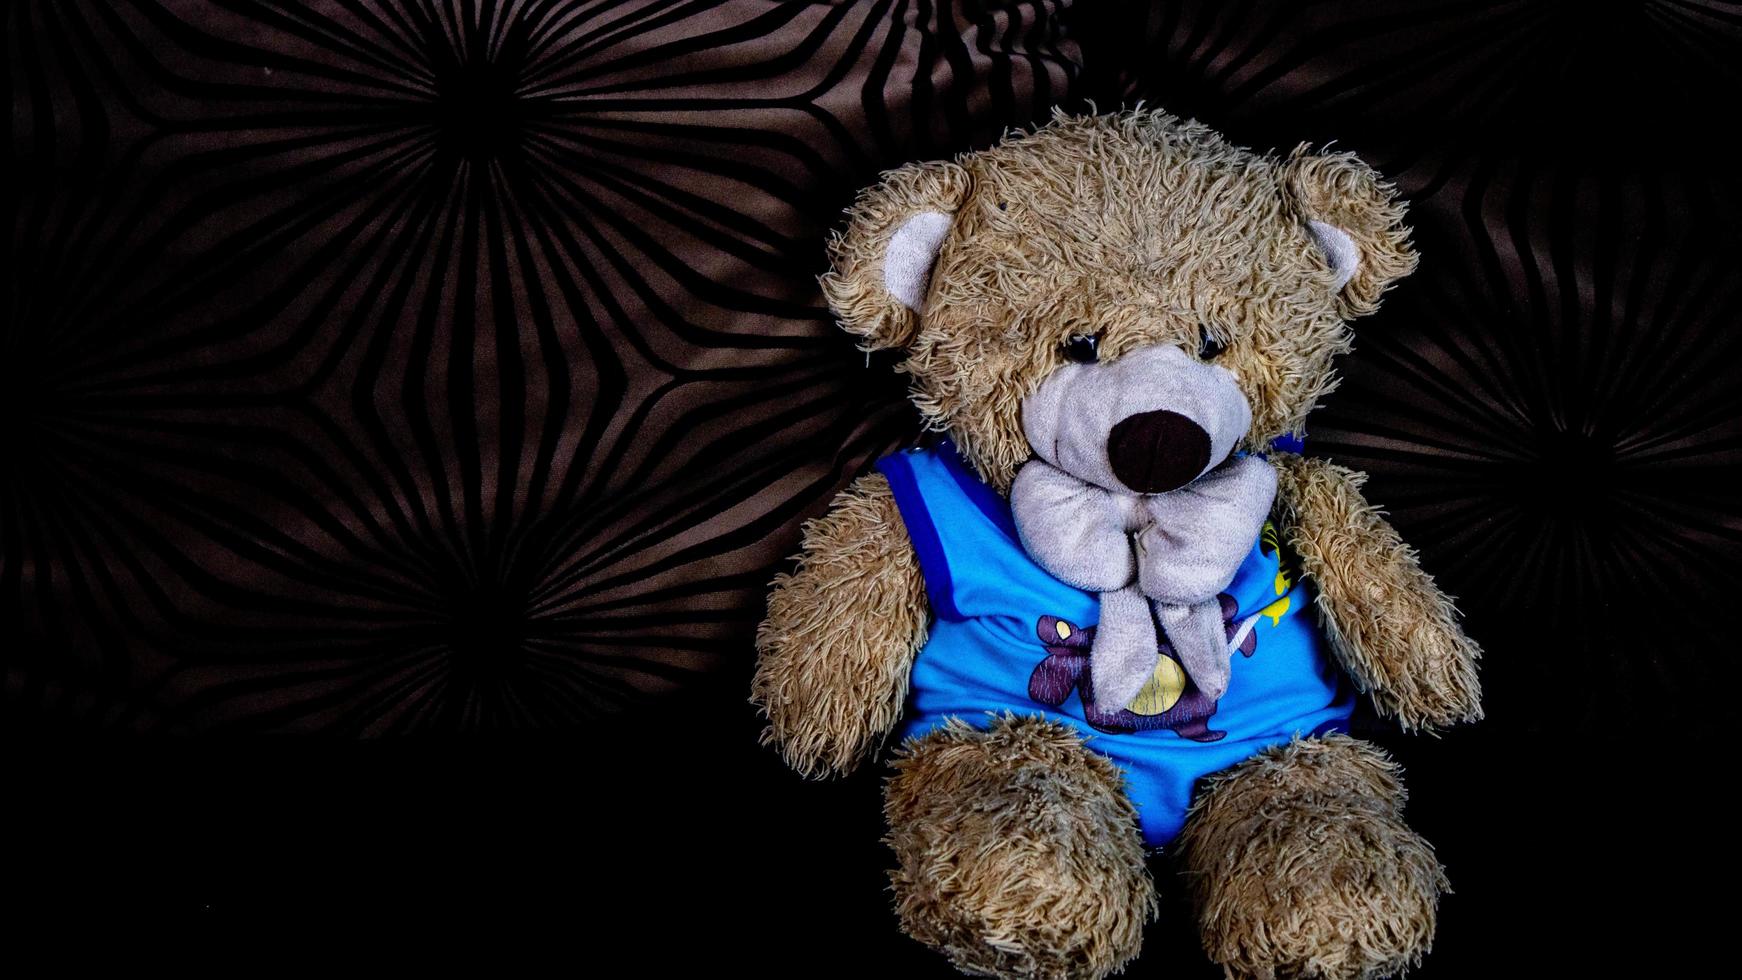 Teddybär in einem blauen T-Shirt auf einem schwarzen Sofa foto